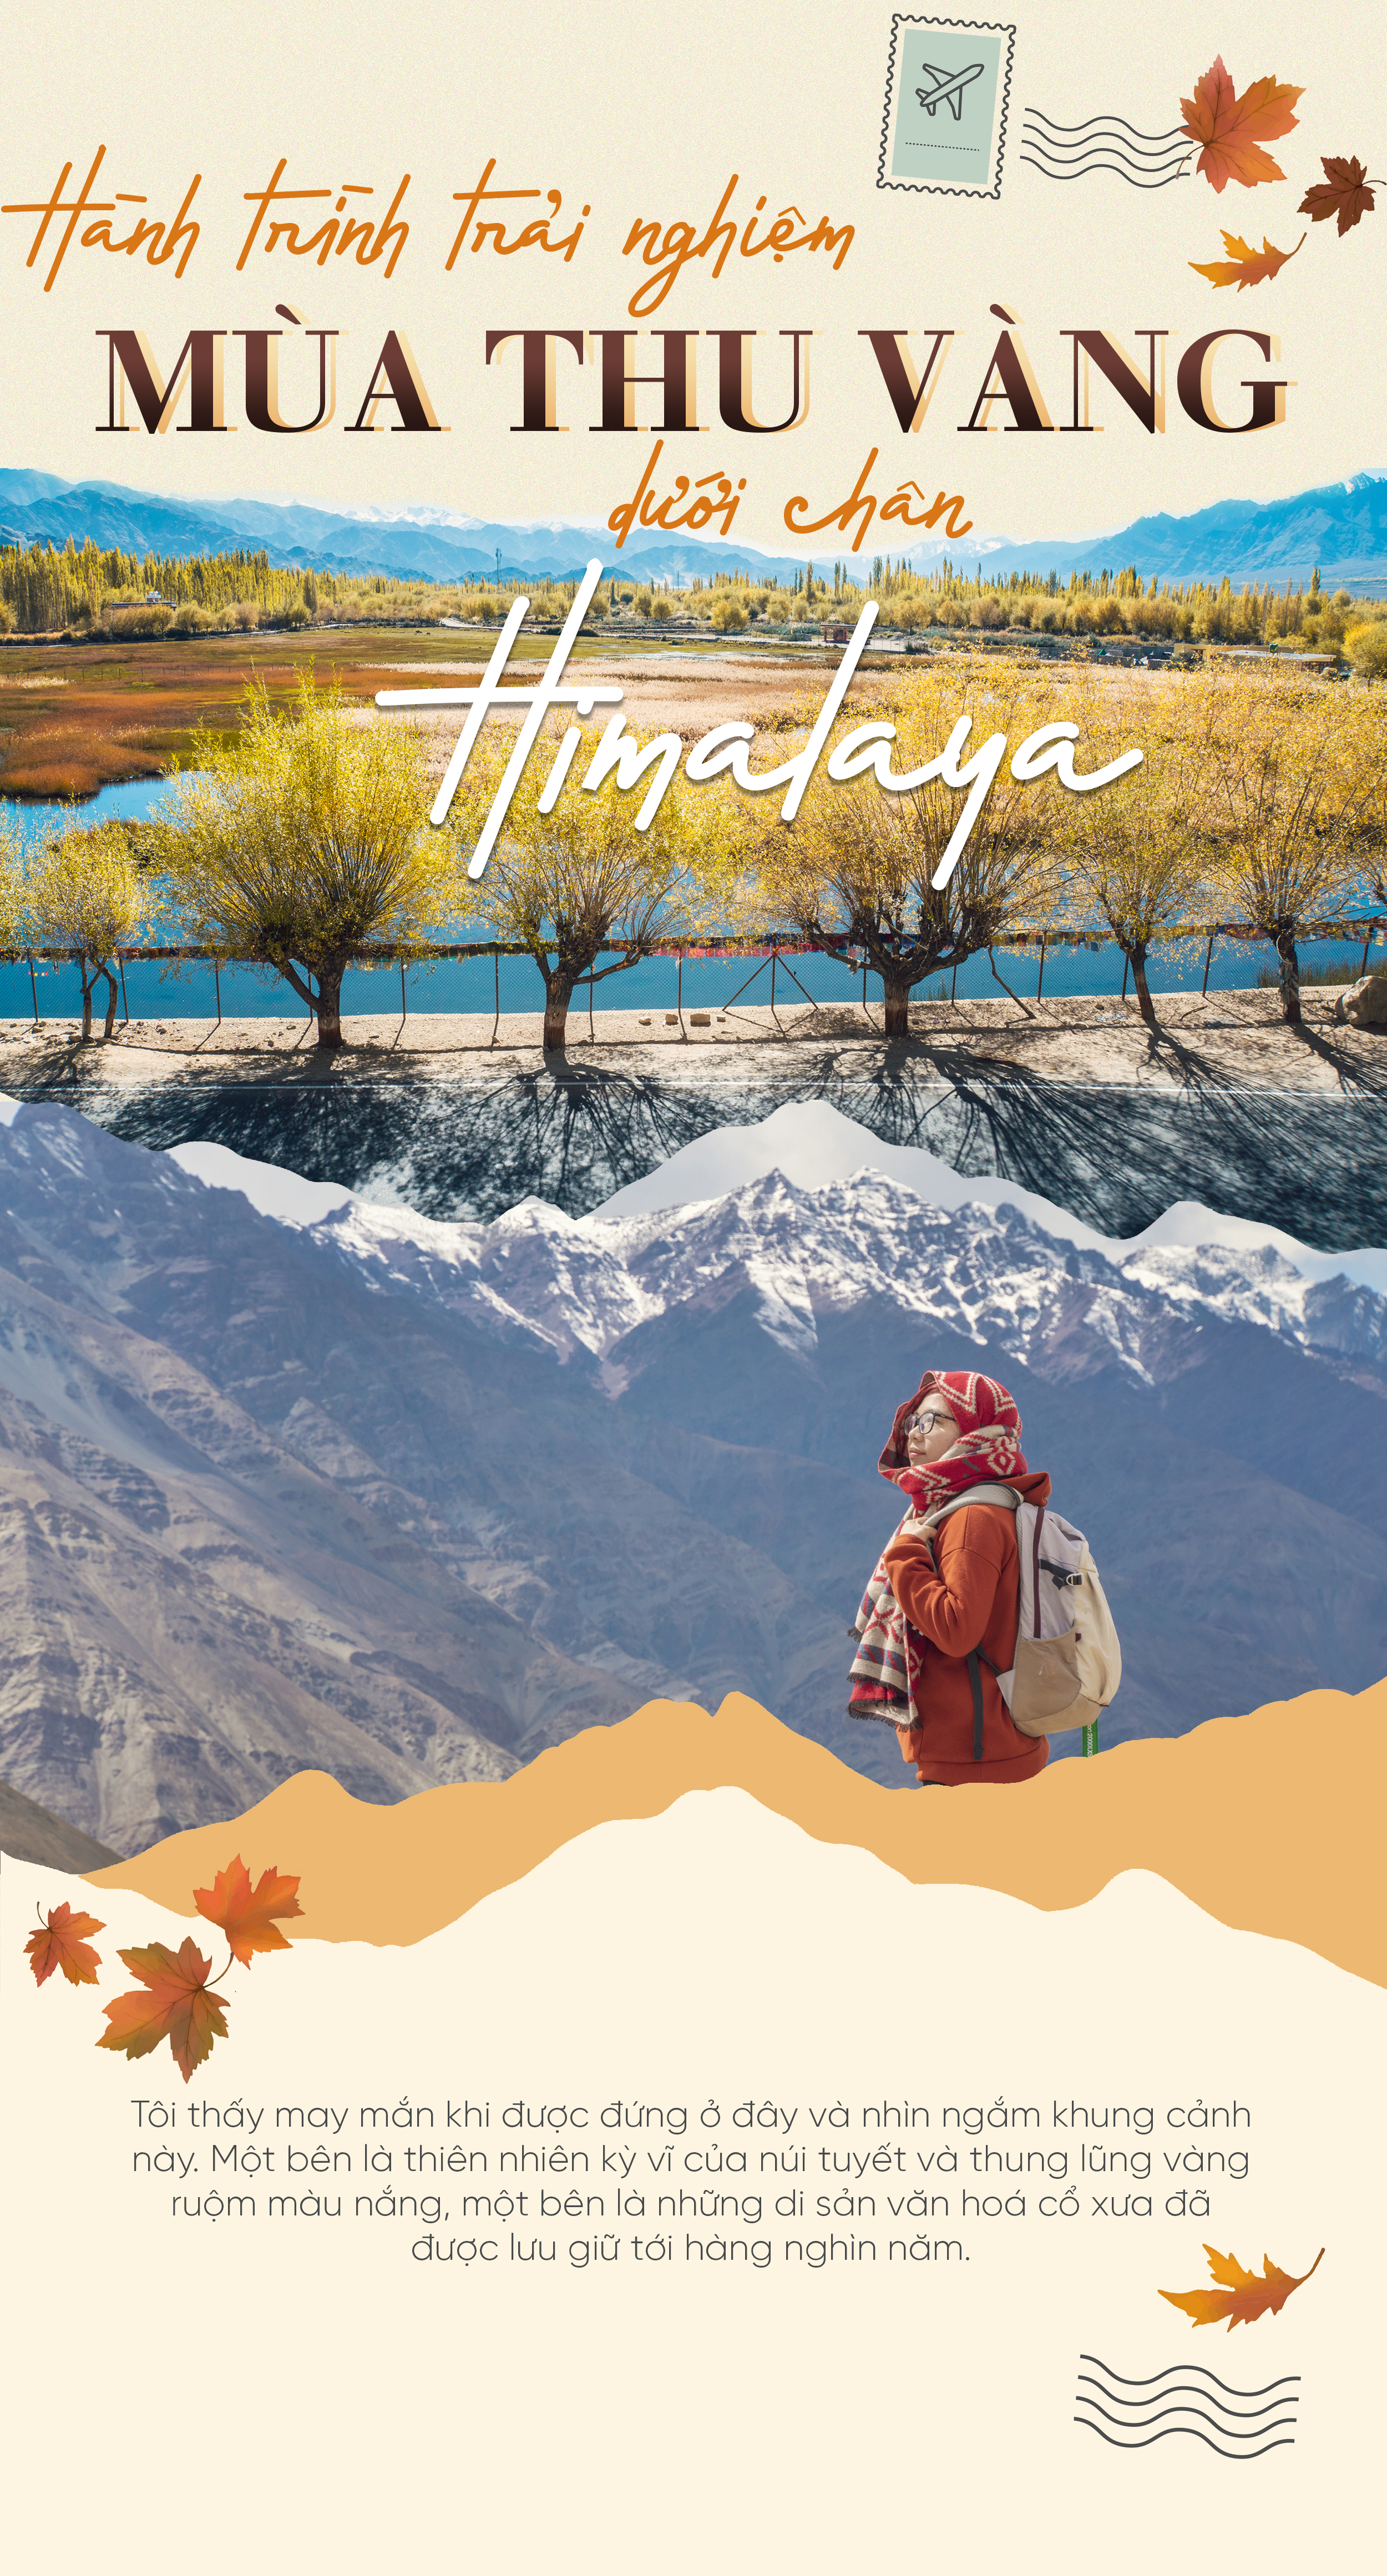 Himalaya trải nghiệm mùa thu vàng:
Trải nghiệm mùa thu vàng lãng mạn tại dãy núi Himalaya hùng vĩ. Đi bộ leo núi, tận hưởng vị ngọt của trái cây nhân độk và thưởng thức cực phẩm với những món ăn địa phương tươi ngon.